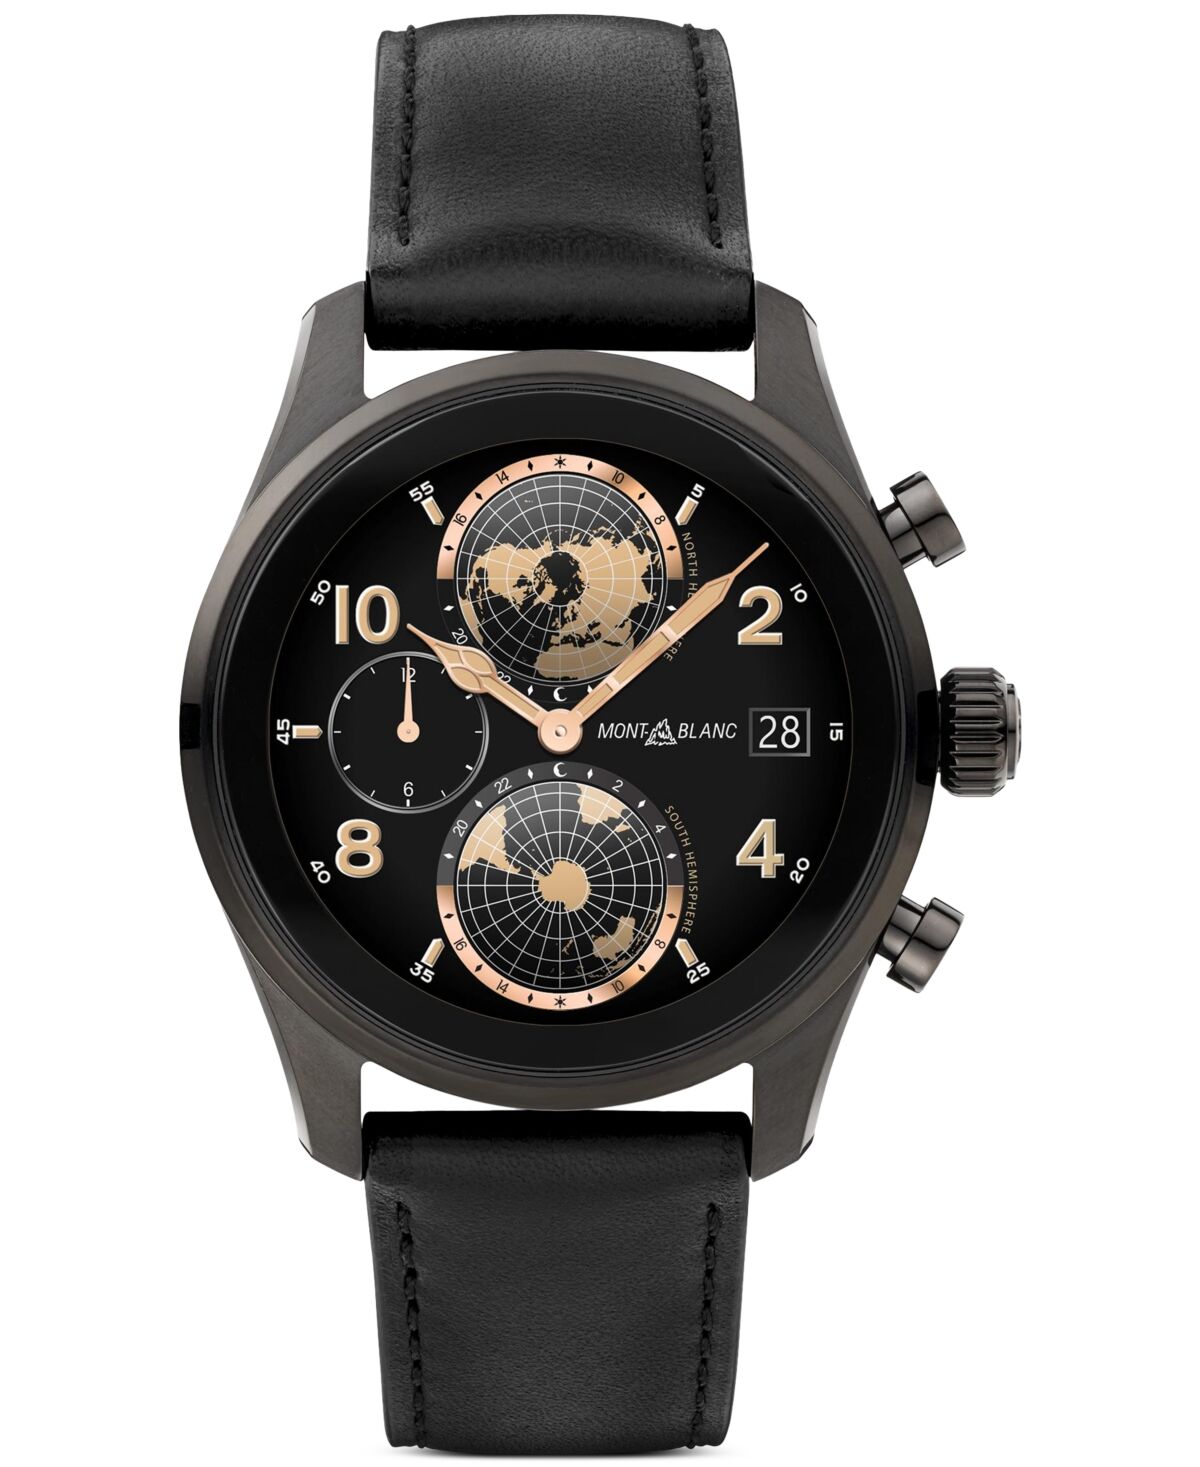 Montblanc Men's Summit 3 Black Leather Strap Smart Watch 42mm - Black